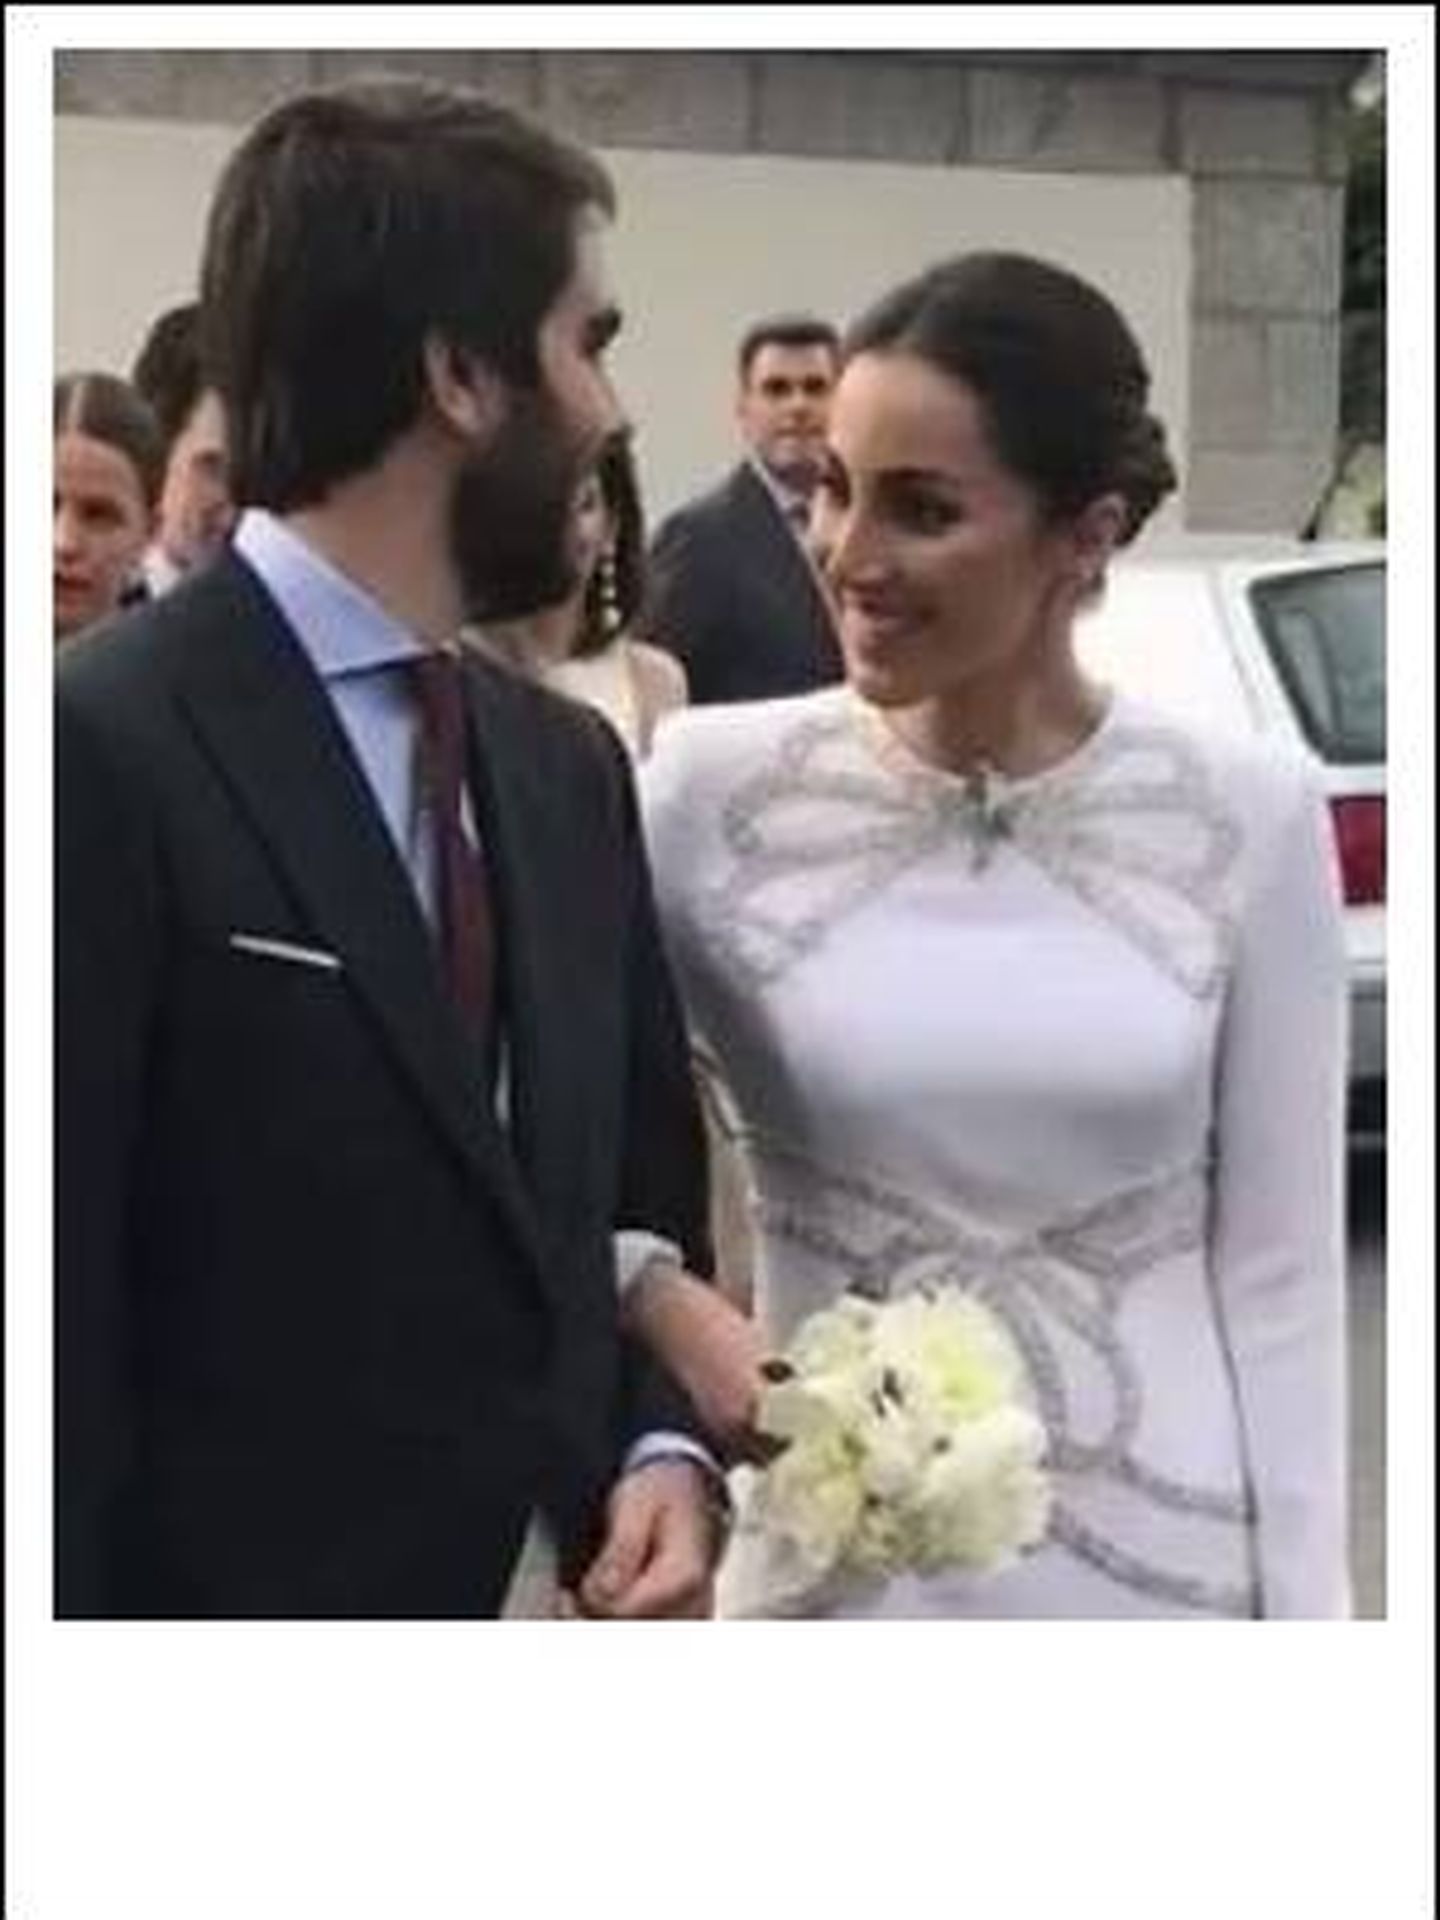 Foto de la boda de la duquesa de Suárez. (Vanitatis)